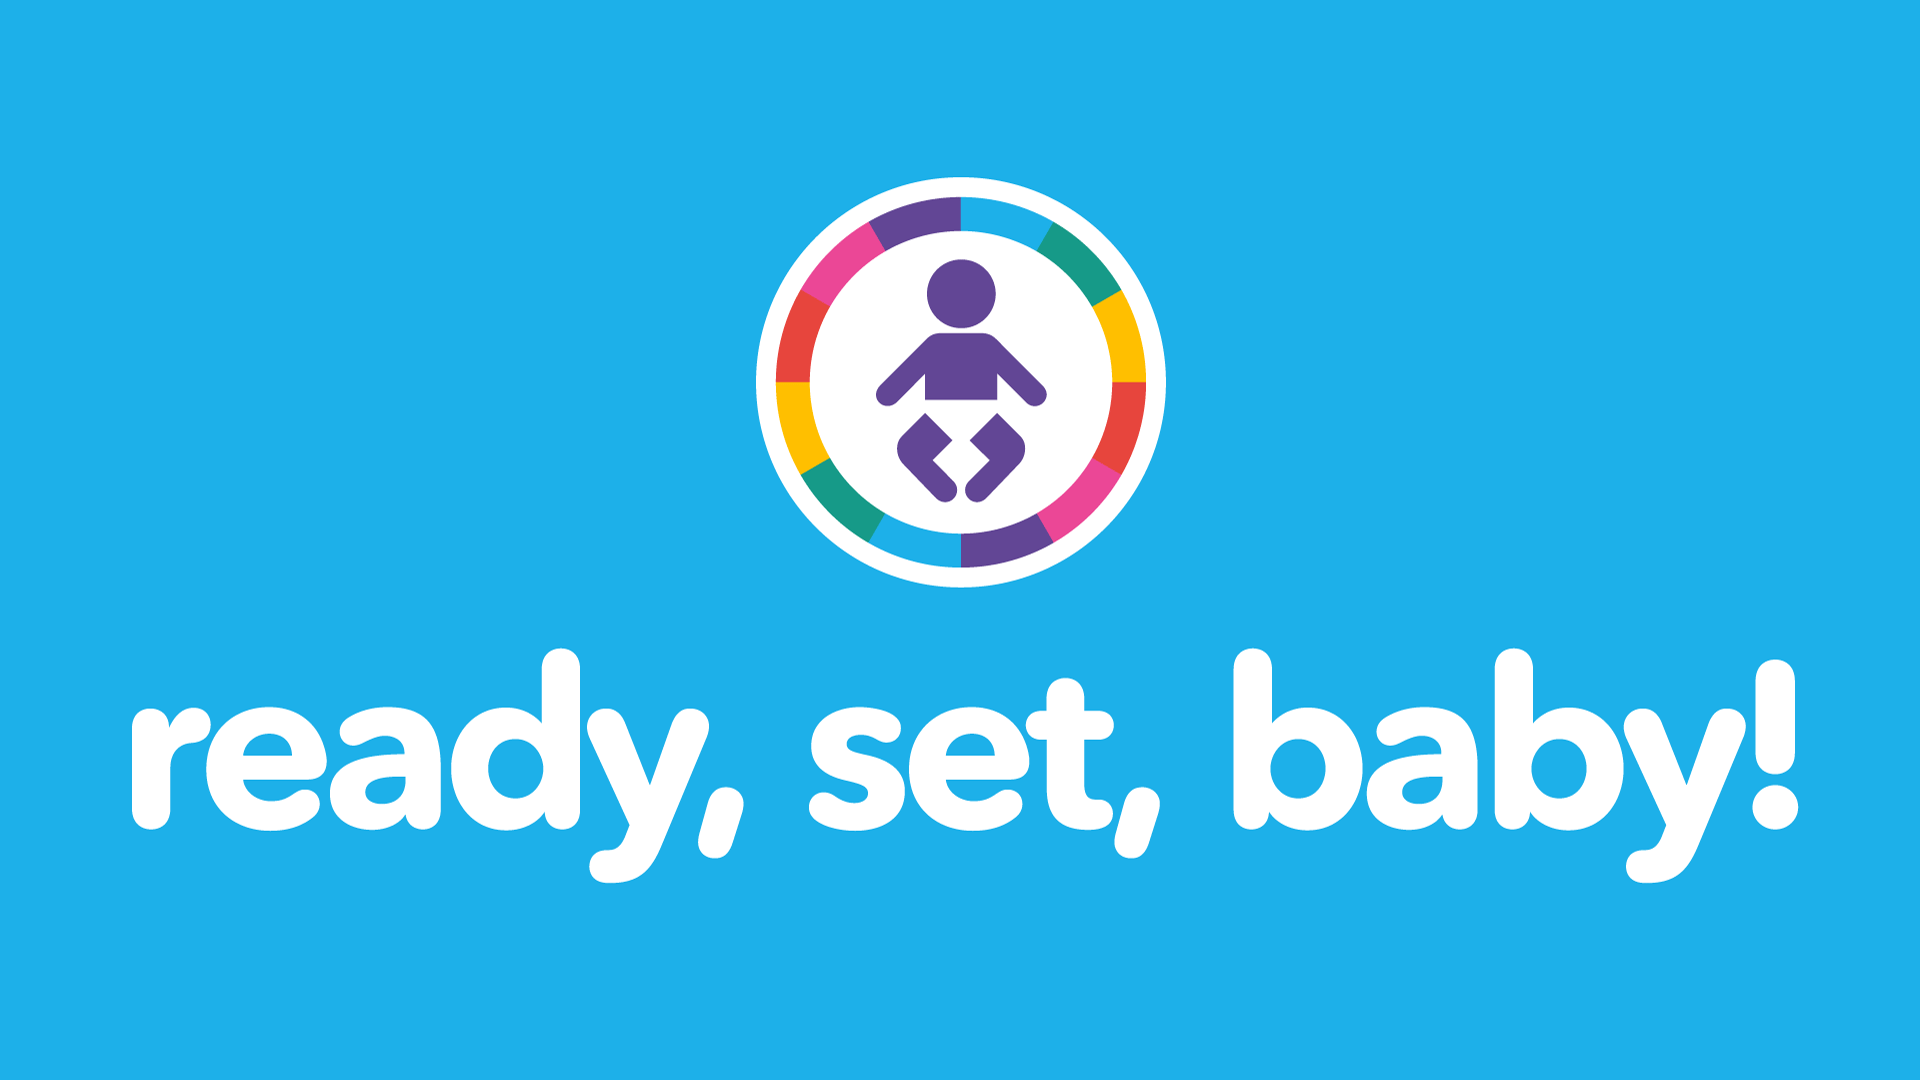 The Ready, Set, Baby! logo